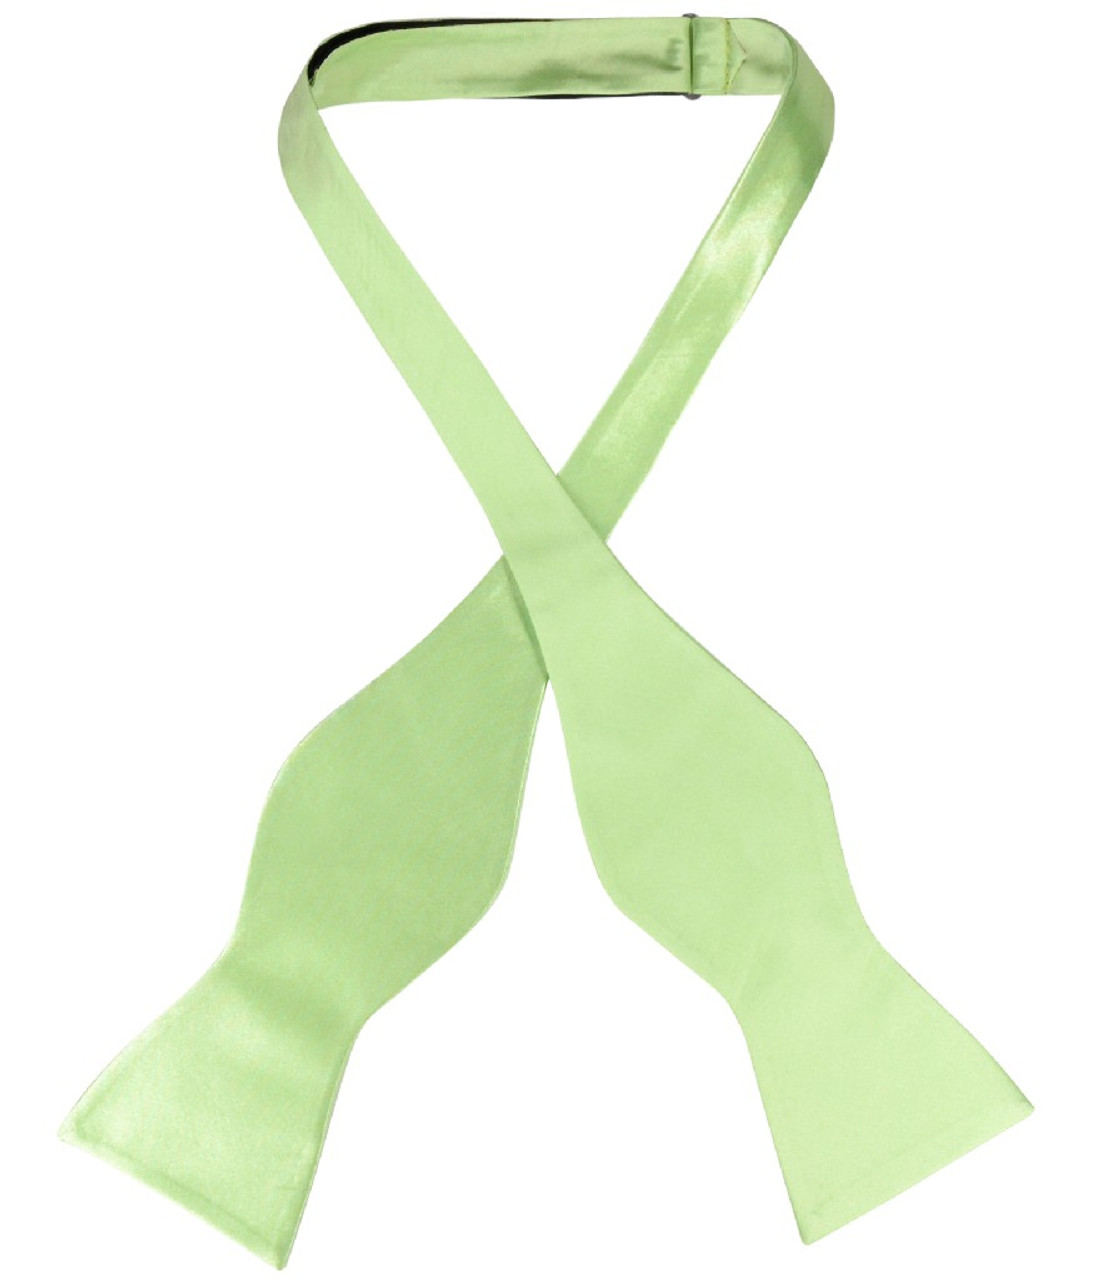 Biagio Self Tie Bow Tie Solid Lime Green Color Mens BowTie